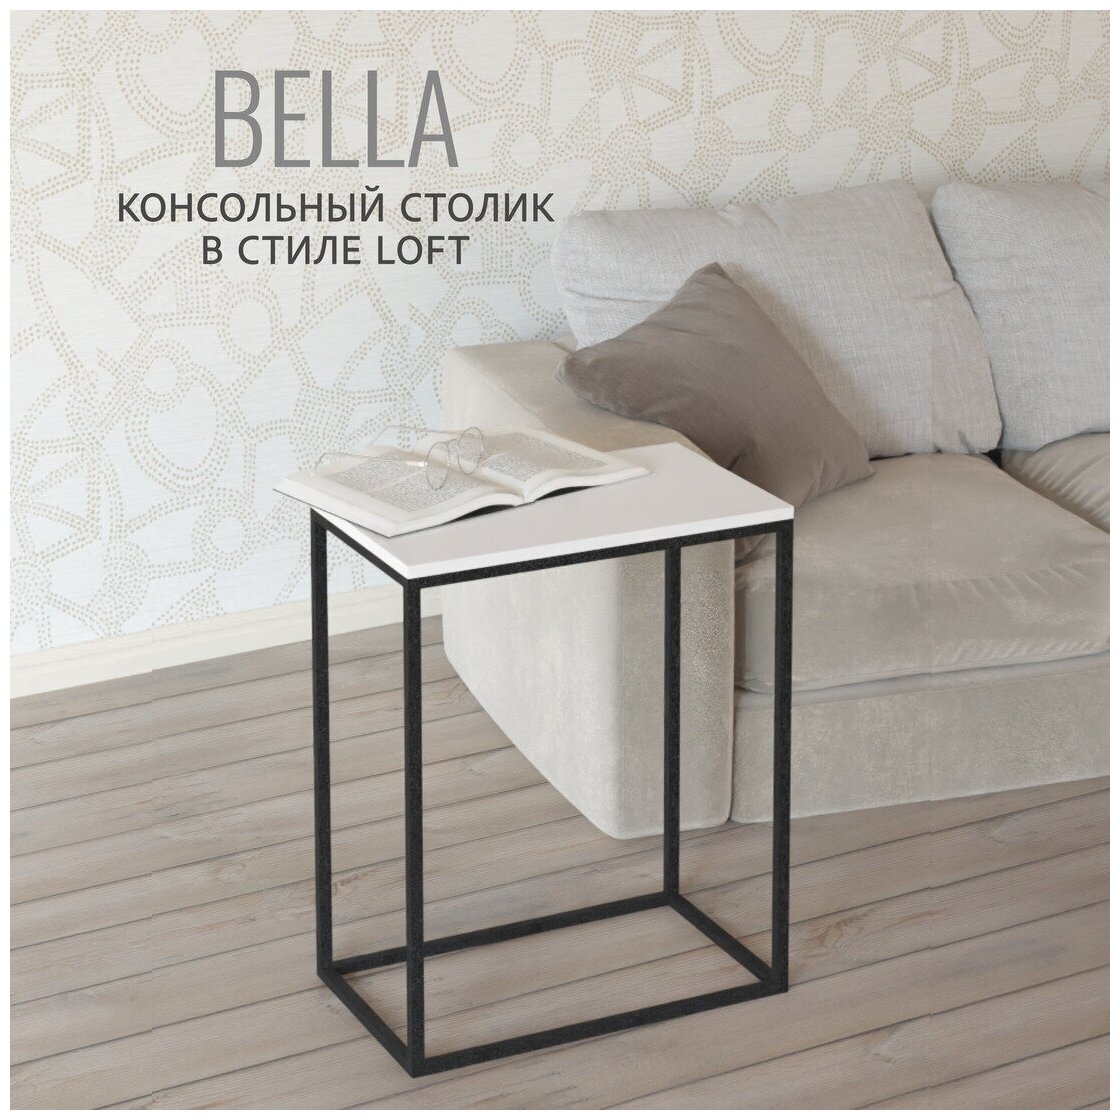 Консольный столик Bella loft